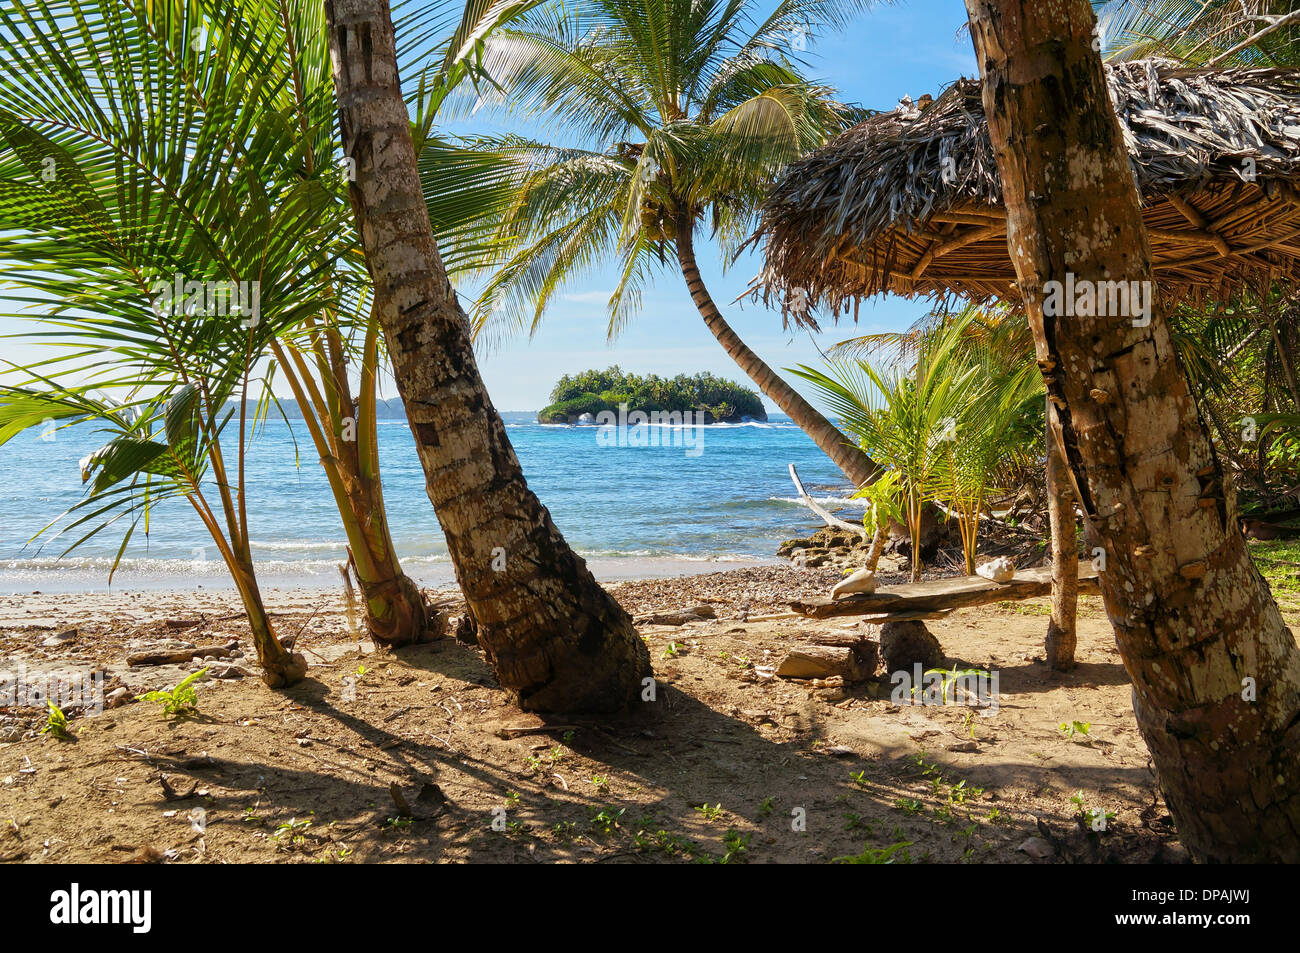 Tropischer Strand mit einem strohgedeckten Dach unter Kokospalmen und eine Insel am Horizont, Karibik, Bastimentos, Panama Stockfoto